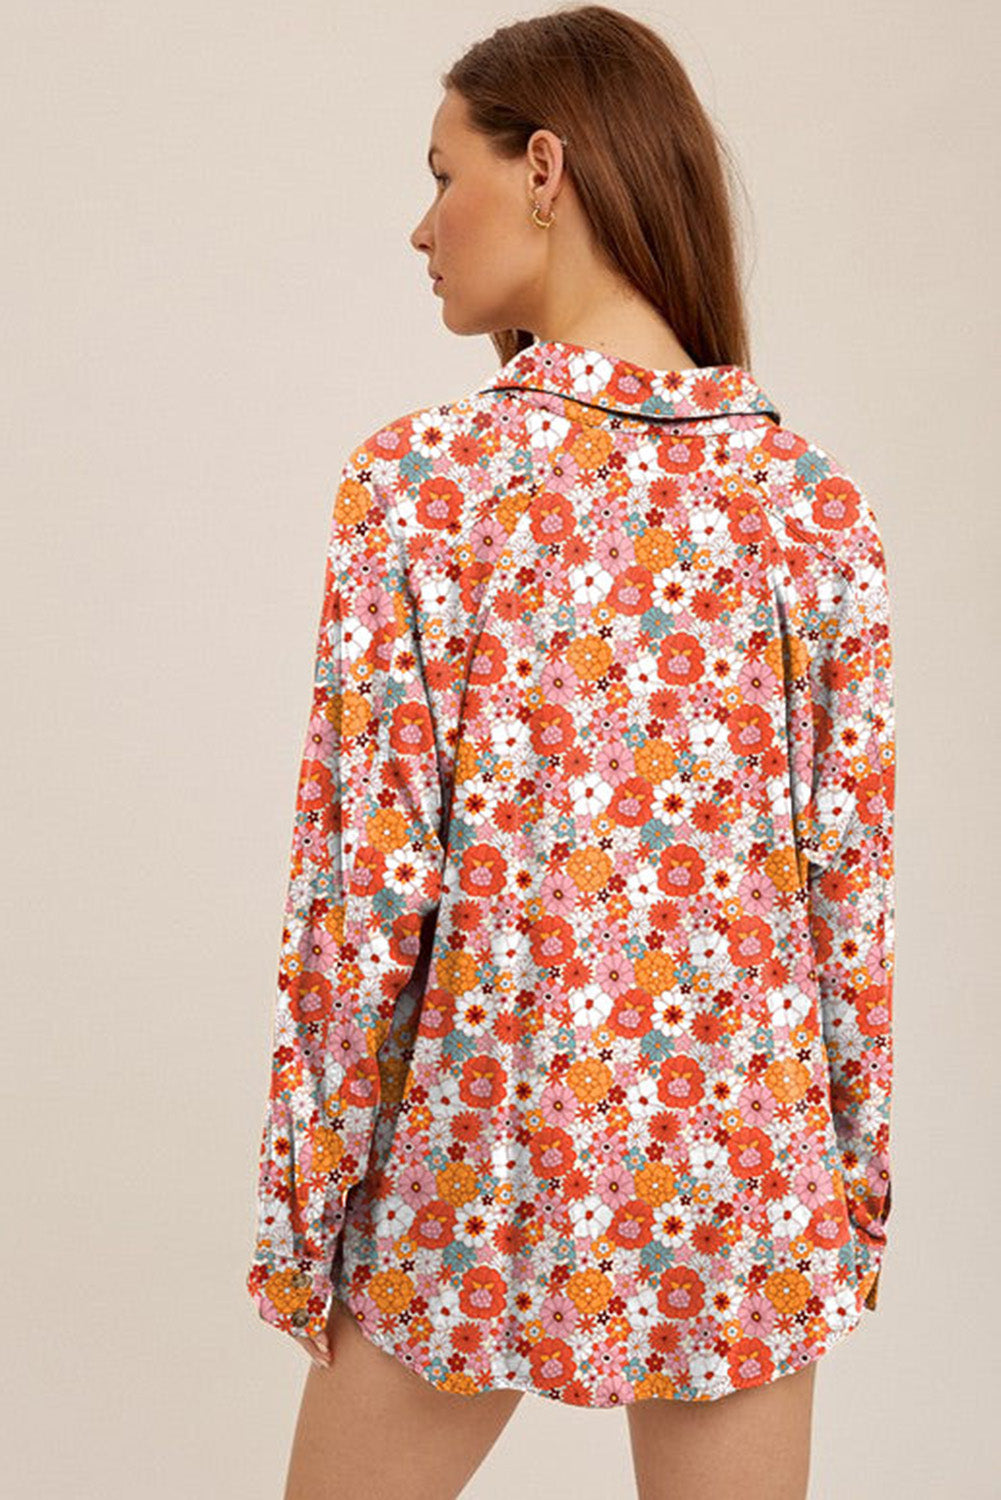 Večbarvna srajca za prosti čas z naprsnimi žepi in cvetličnim vzorcem